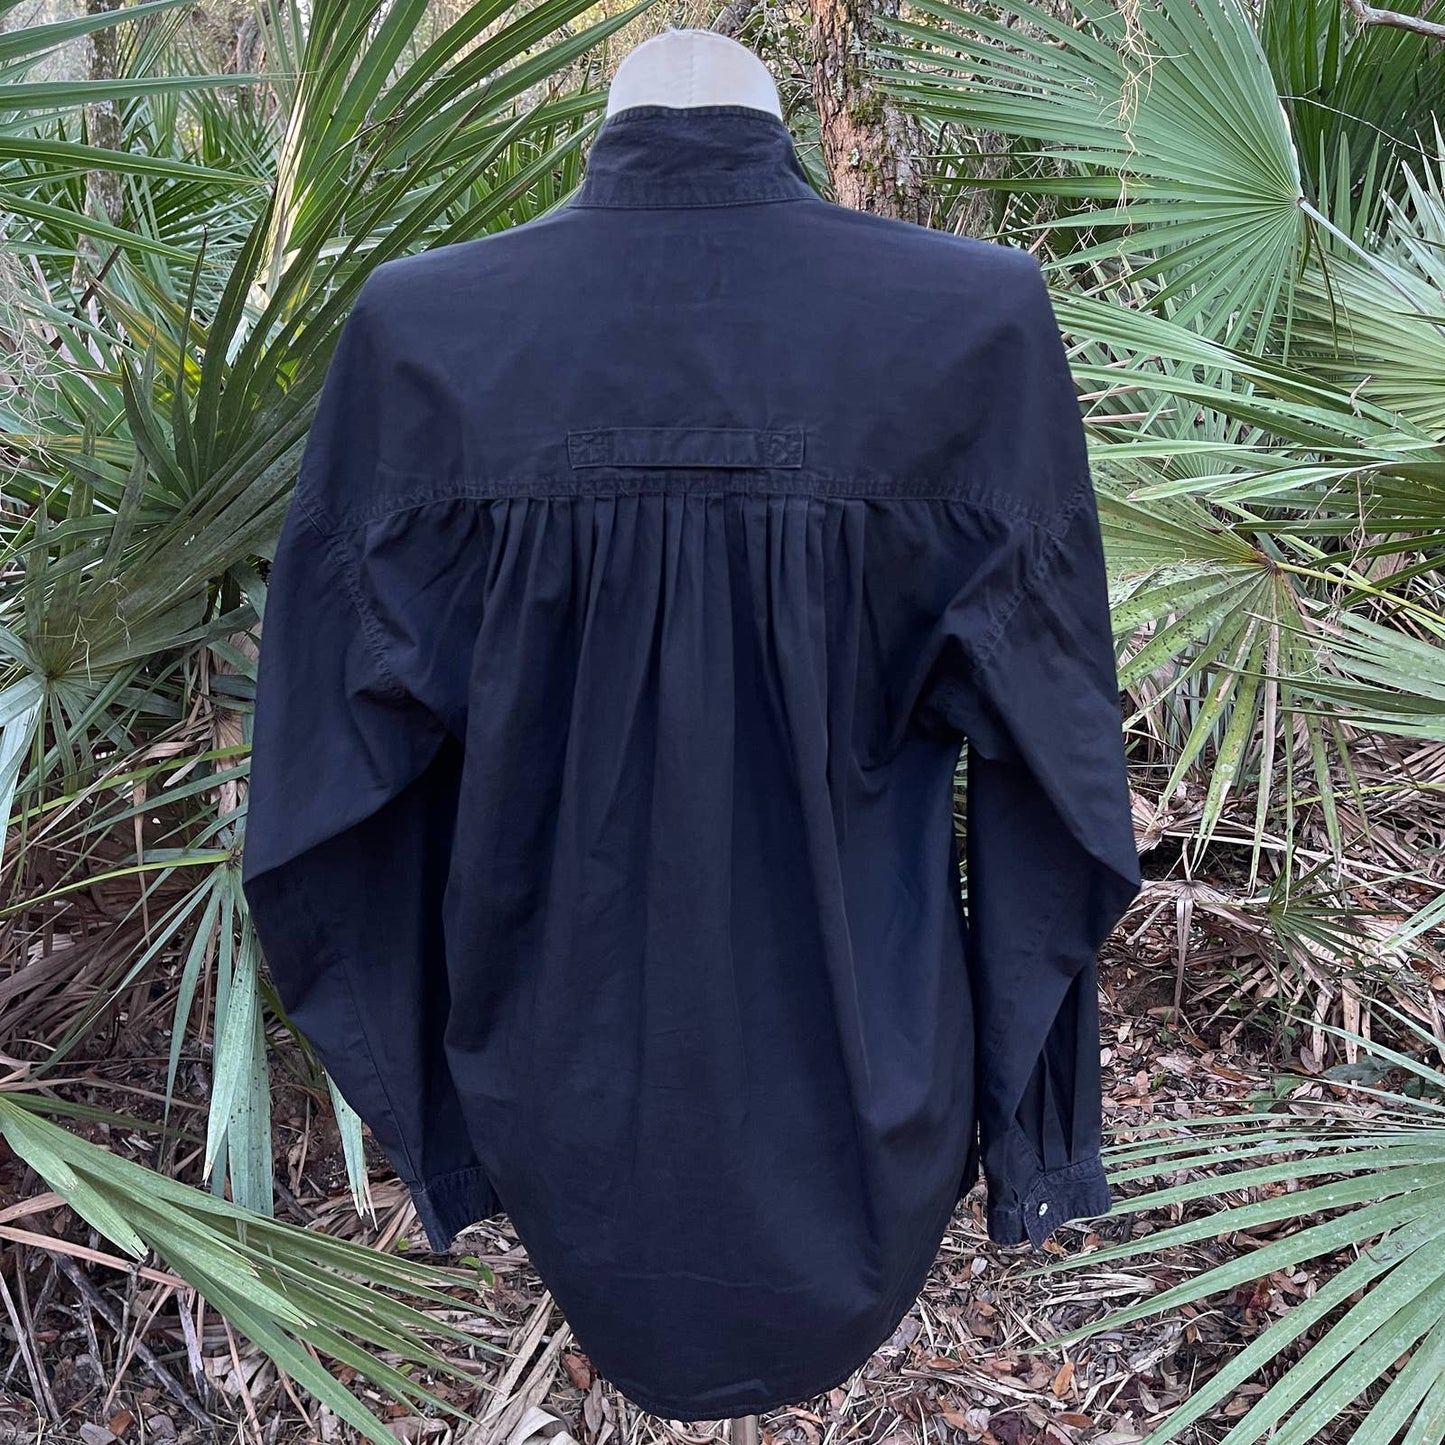 Vintage 90s Black Minimalist Blouse Button Up Polished Cotton Cosi Crest Size M